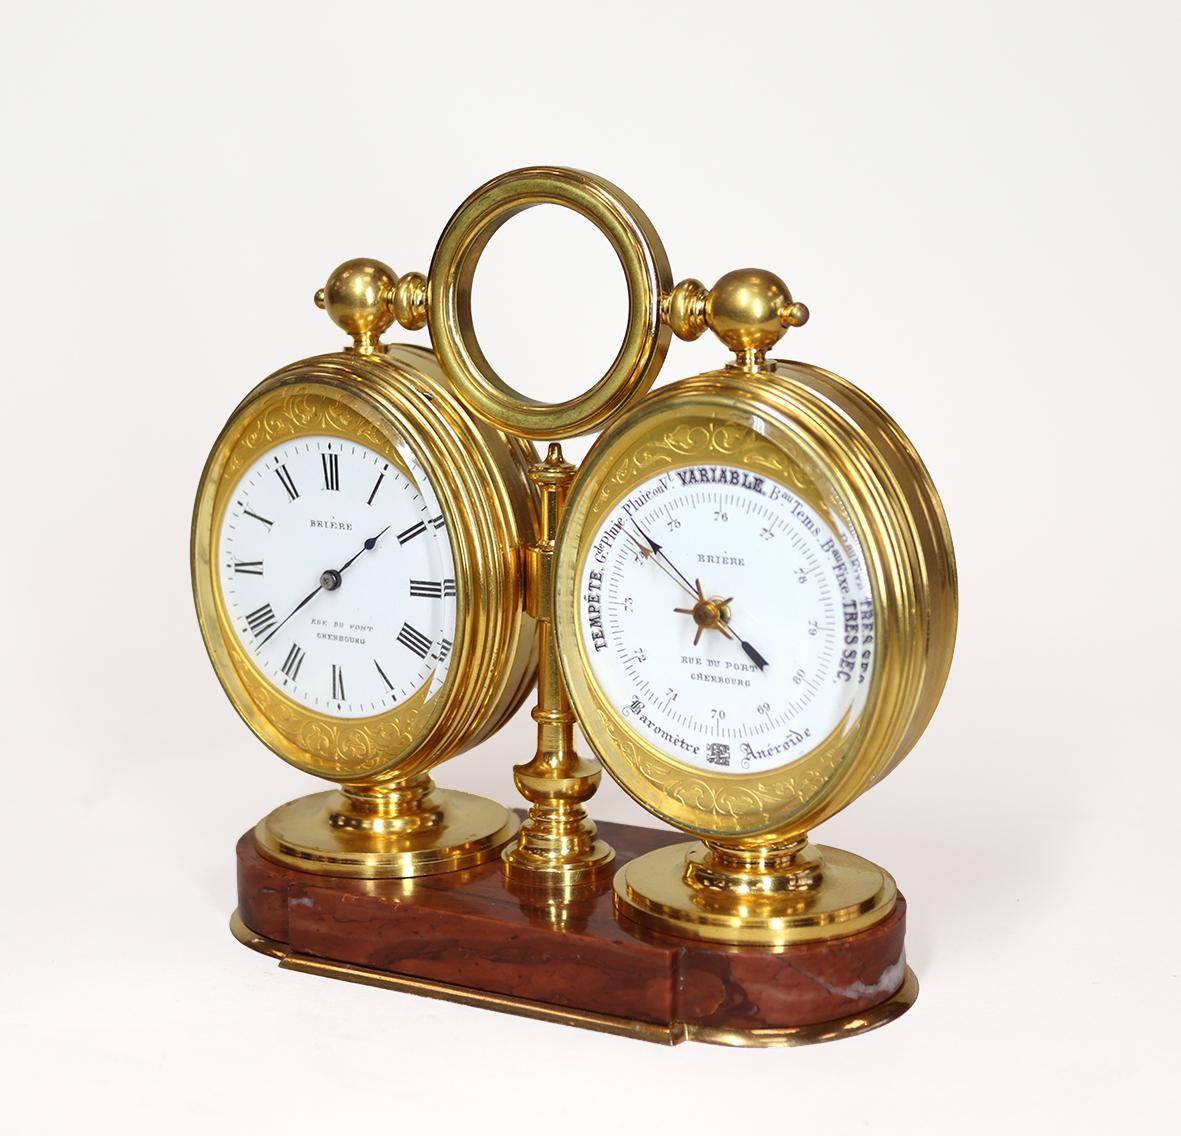 Ein sehr feines Kompendium für den Schreibtisch, bestehend aus einer Acht-Tage-Uhr, einem Barometer und einem Thermometer, in einem vergoldeten ovalen Doppelgehäuse, montiert auf einem rougefarbenen Marmorsockel mit einer drehbaren runden